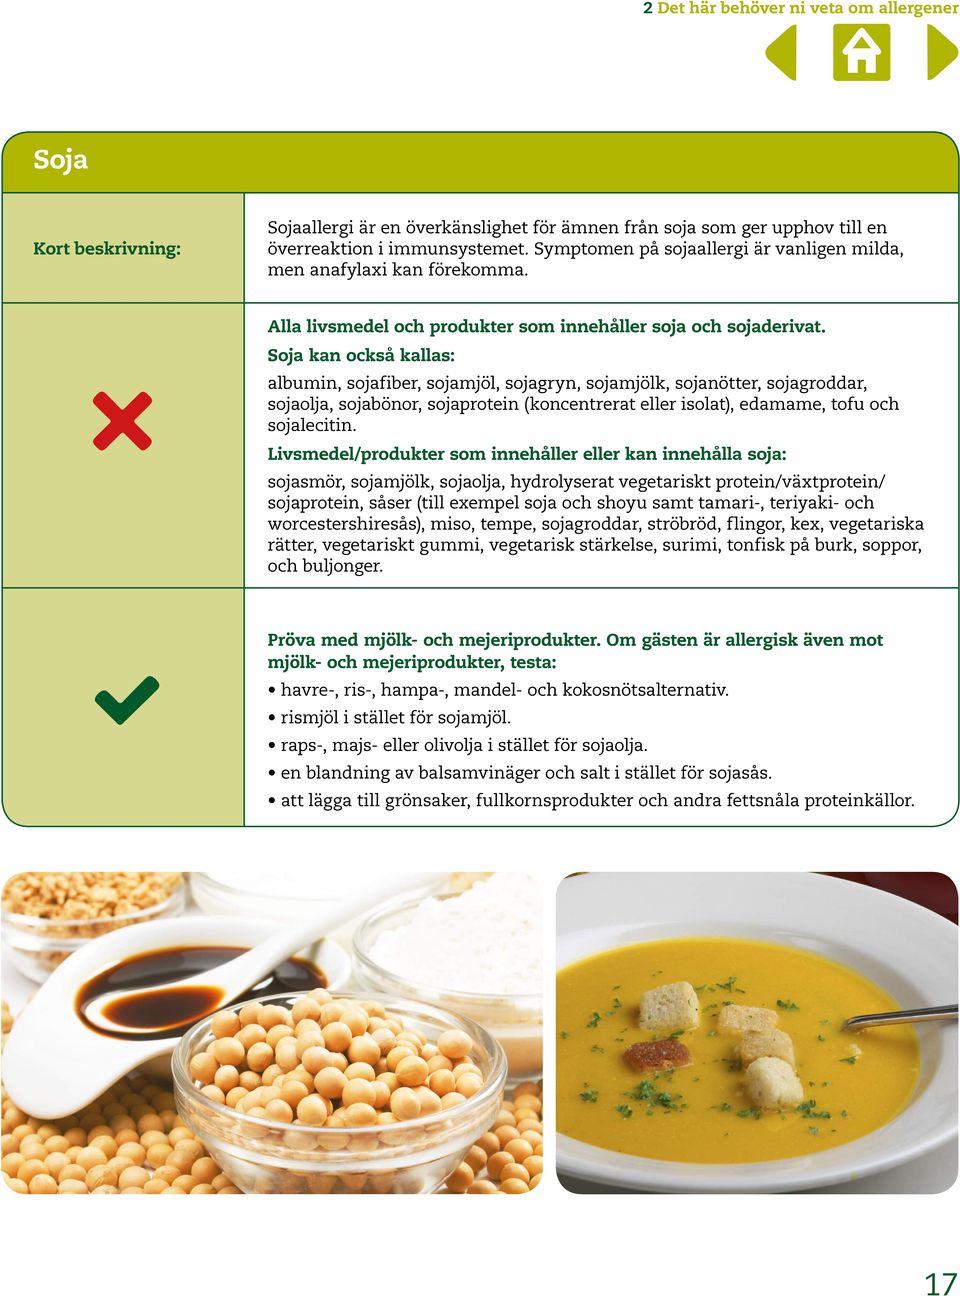 Soja kan också kallas: albumin, sojafiber, sojamjöl, sojagryn, sojamjölk, sojanötter, sojagroddar, sojaolja, sojabönor, sojaprotein (koncentrerat eller isolat), edamame, tofu och sojalecitin.